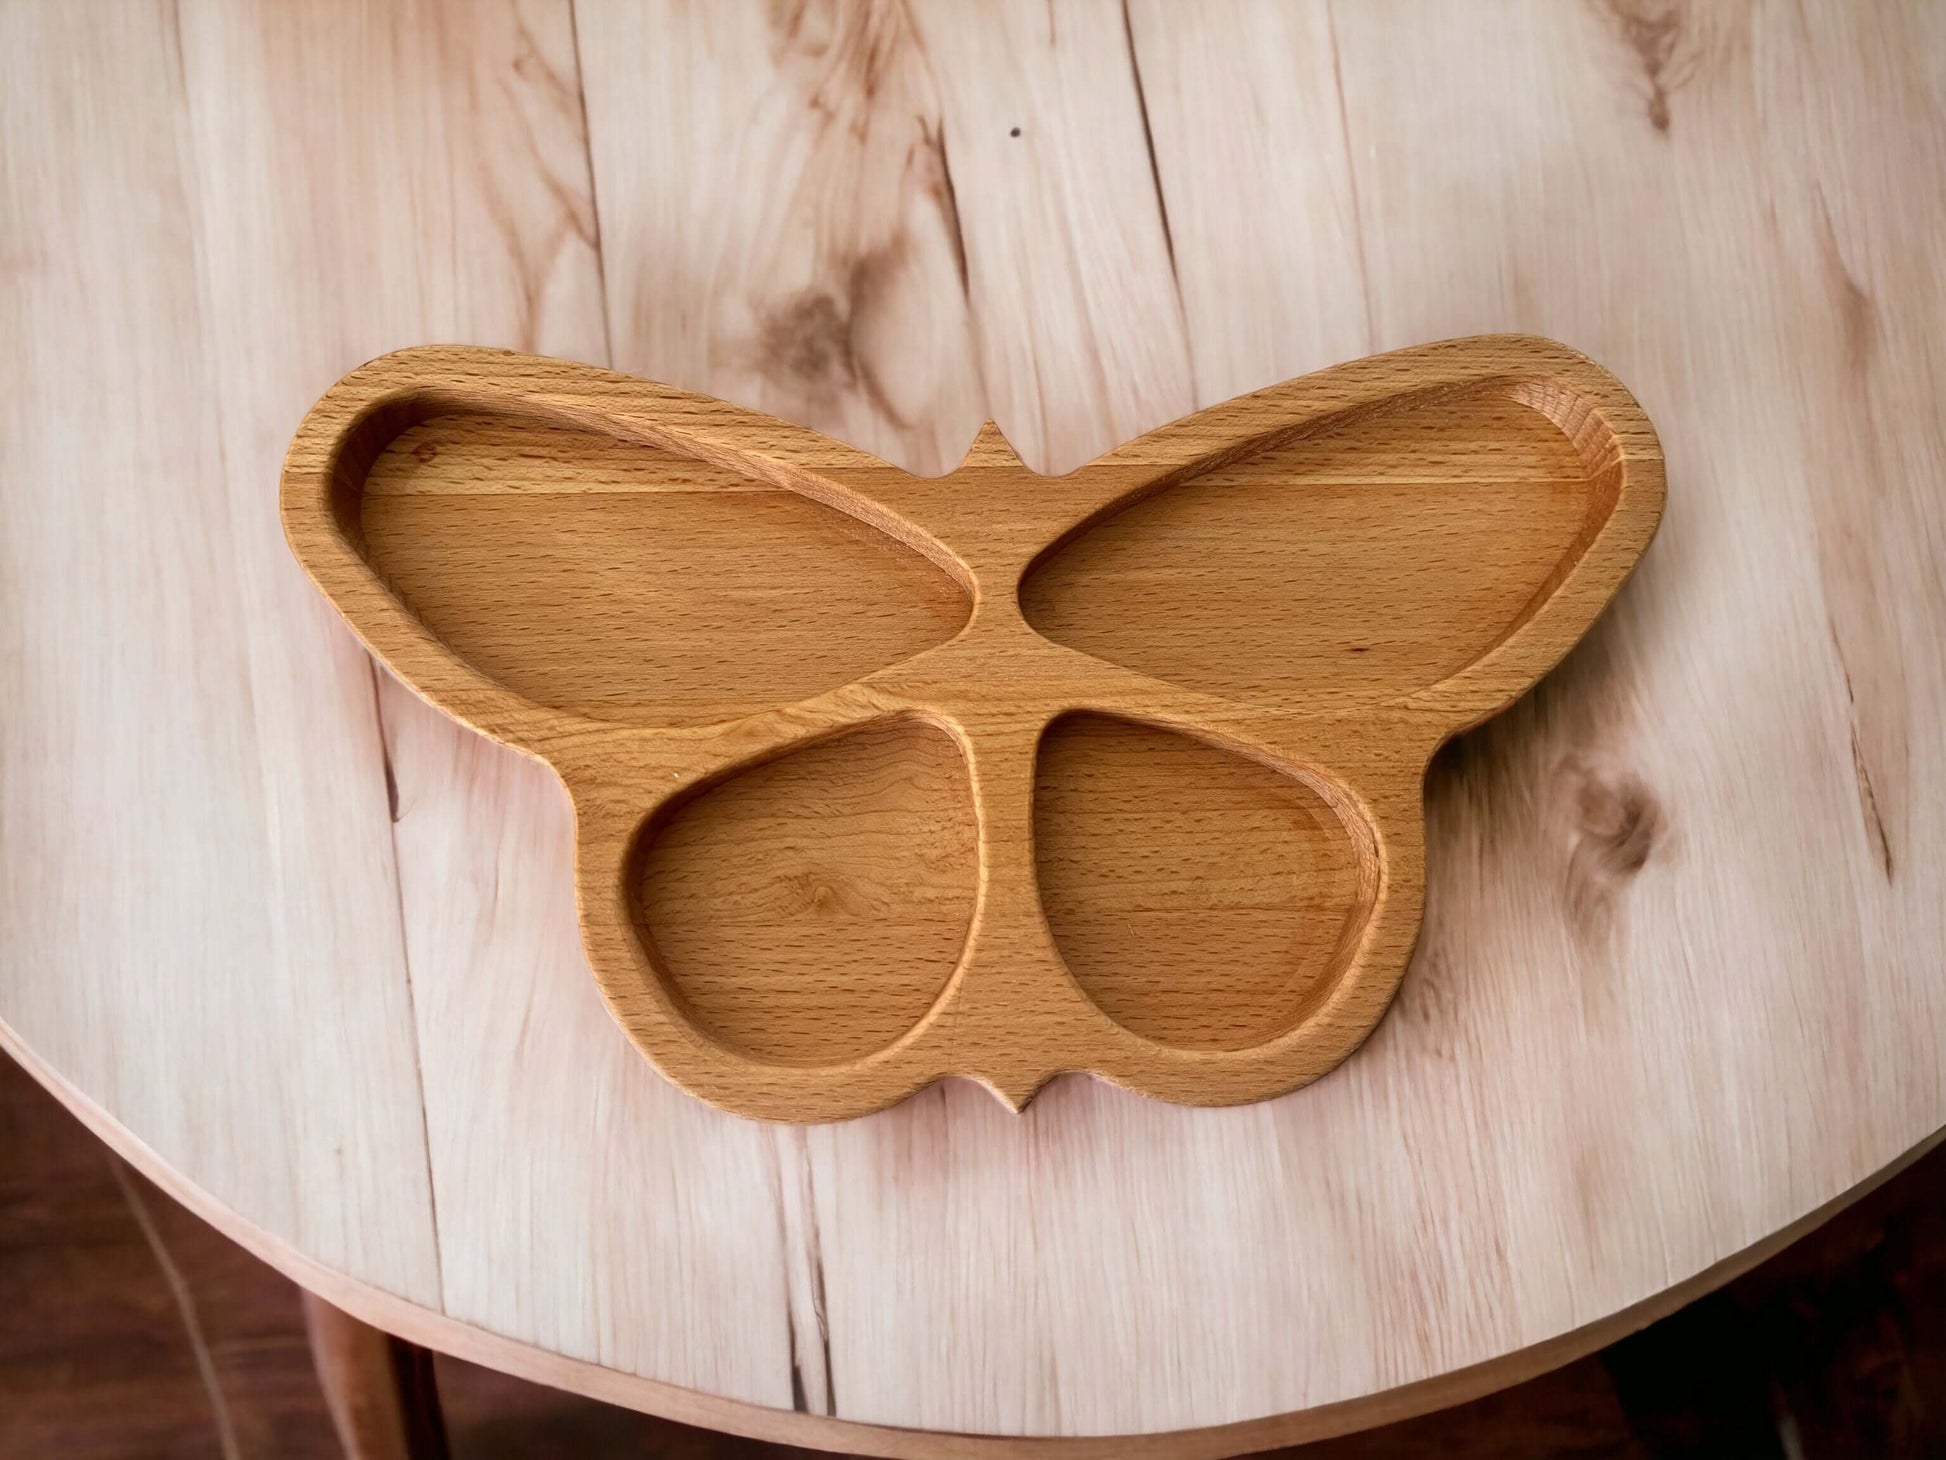 Drevená miska - Motýľ 28,5 cm z masívneho dreva ošetrená olejom pre bezpečné použitie